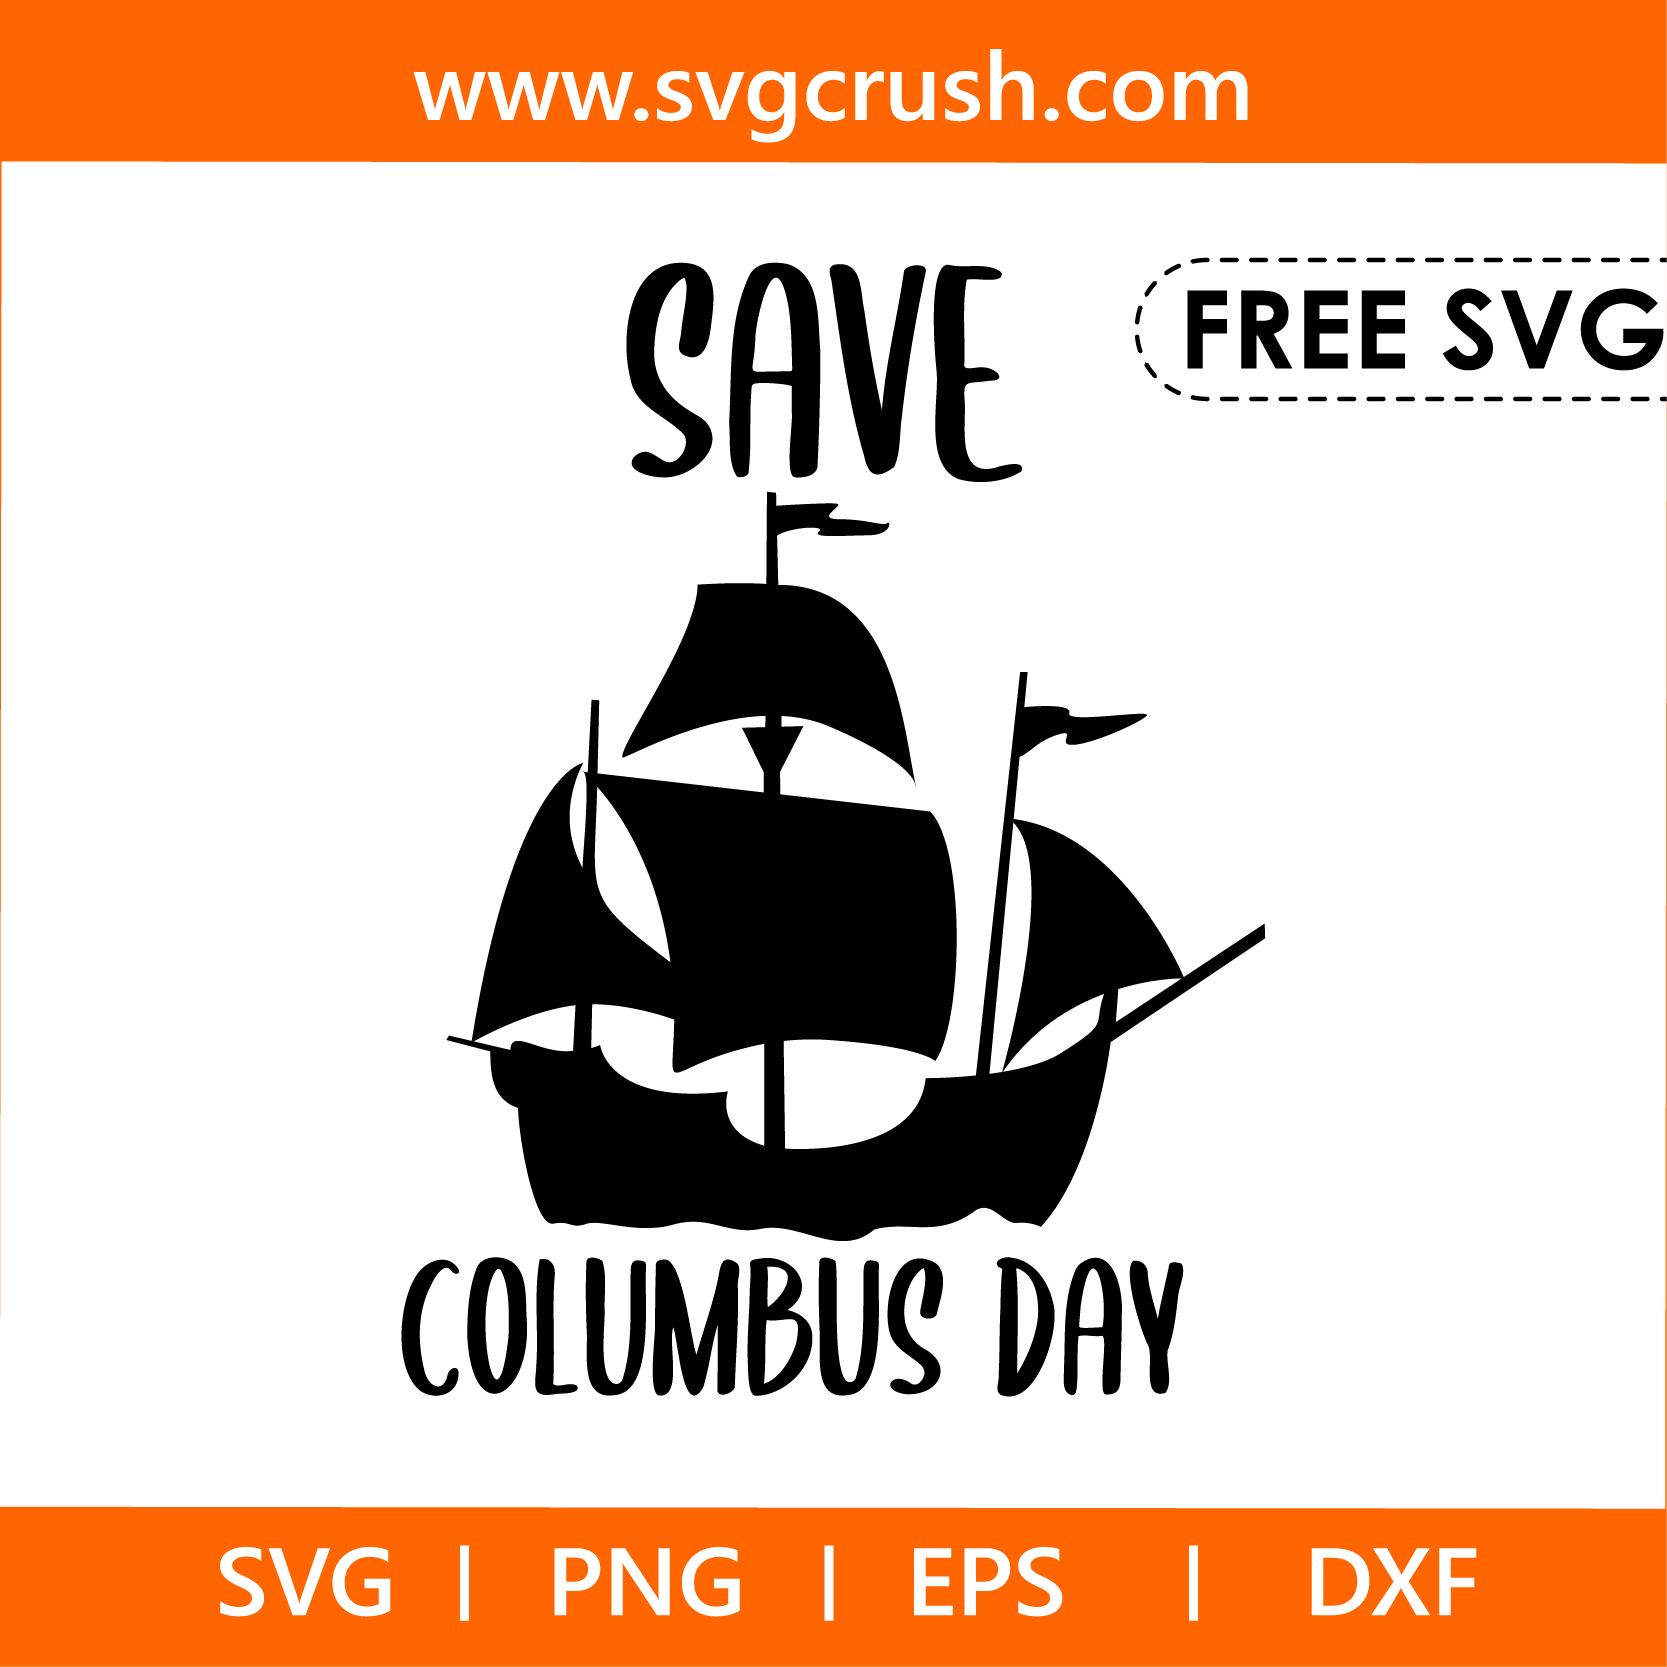 free save-columbus-day-004 svg